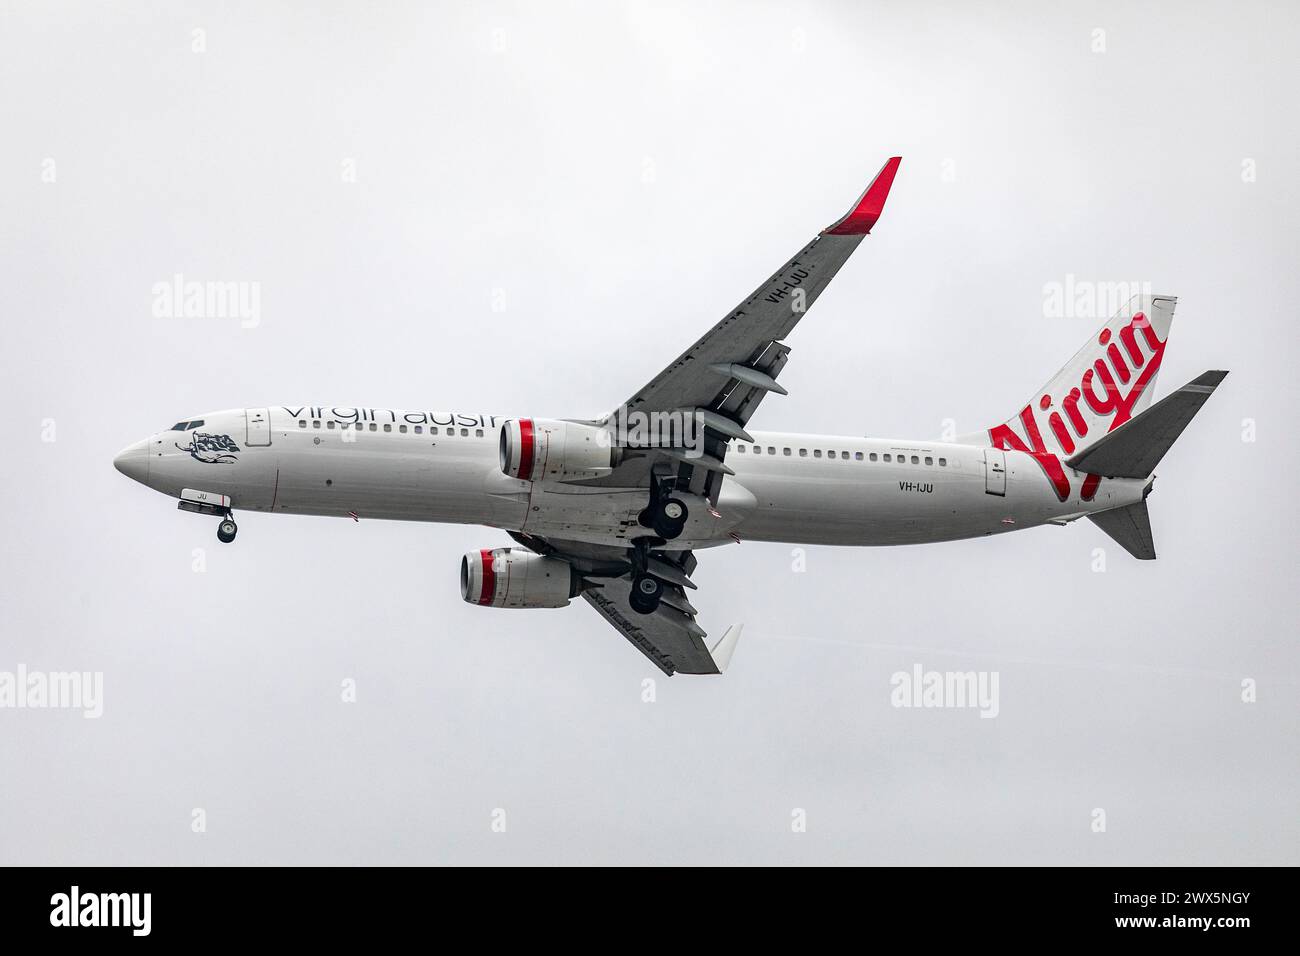 Virgin Australia avion de vol, un Boeing 737, volant au-dessus de Sydney alors qu'il se dirige vers l'aéroport St Sydney Kingsford smith, Australie, 2024 Banque D'Images